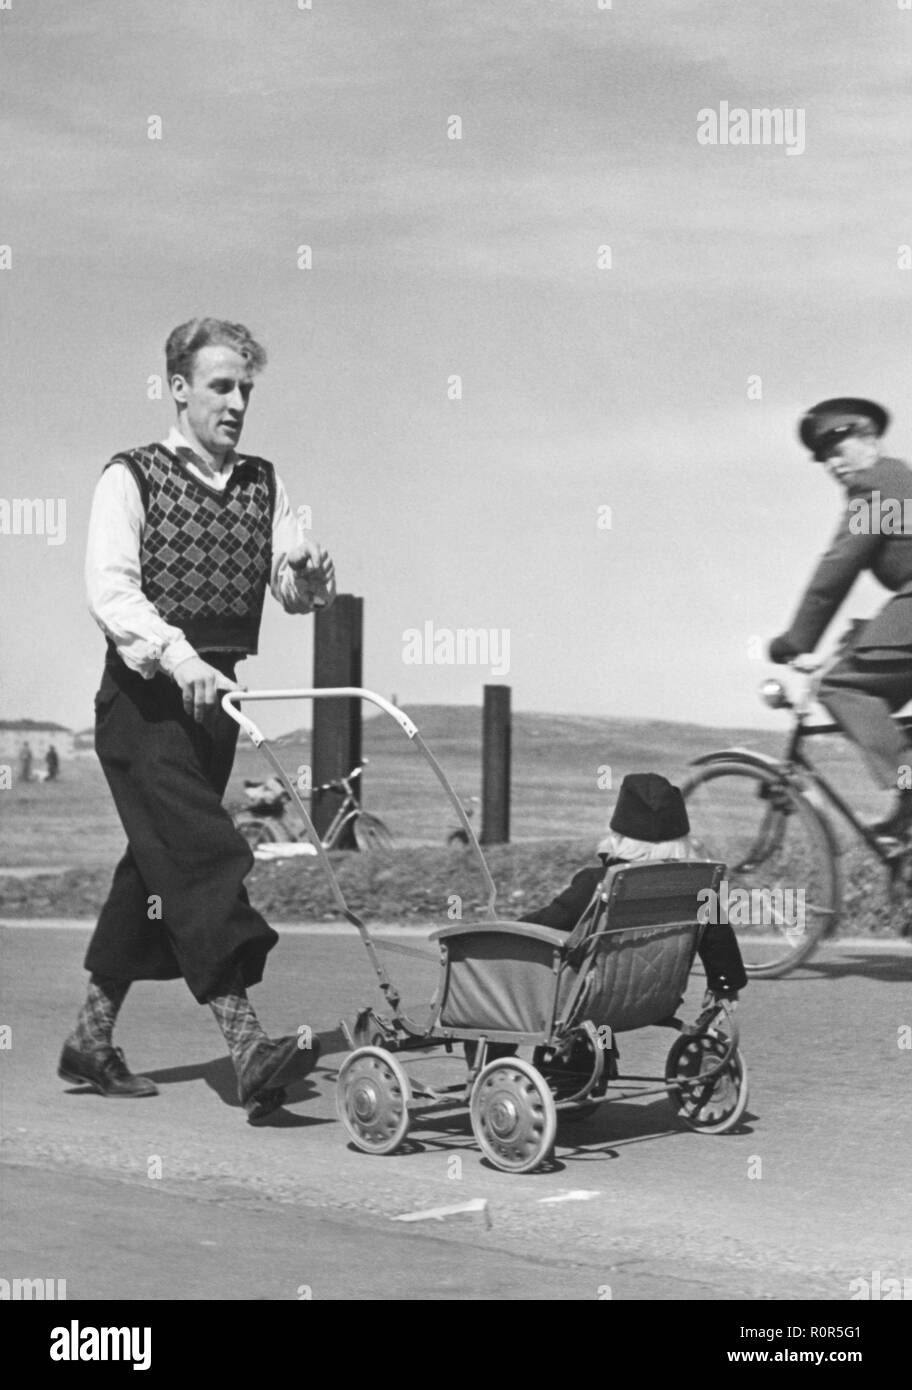 Le père et l'enfant dans les années 40. Un homme portant des années 1940, typique de la mode d'une presse à pantalons est poussant une poussette avec son enfant. Il est marcher pour un événement de bienfaisance 1942 Banque D'Images